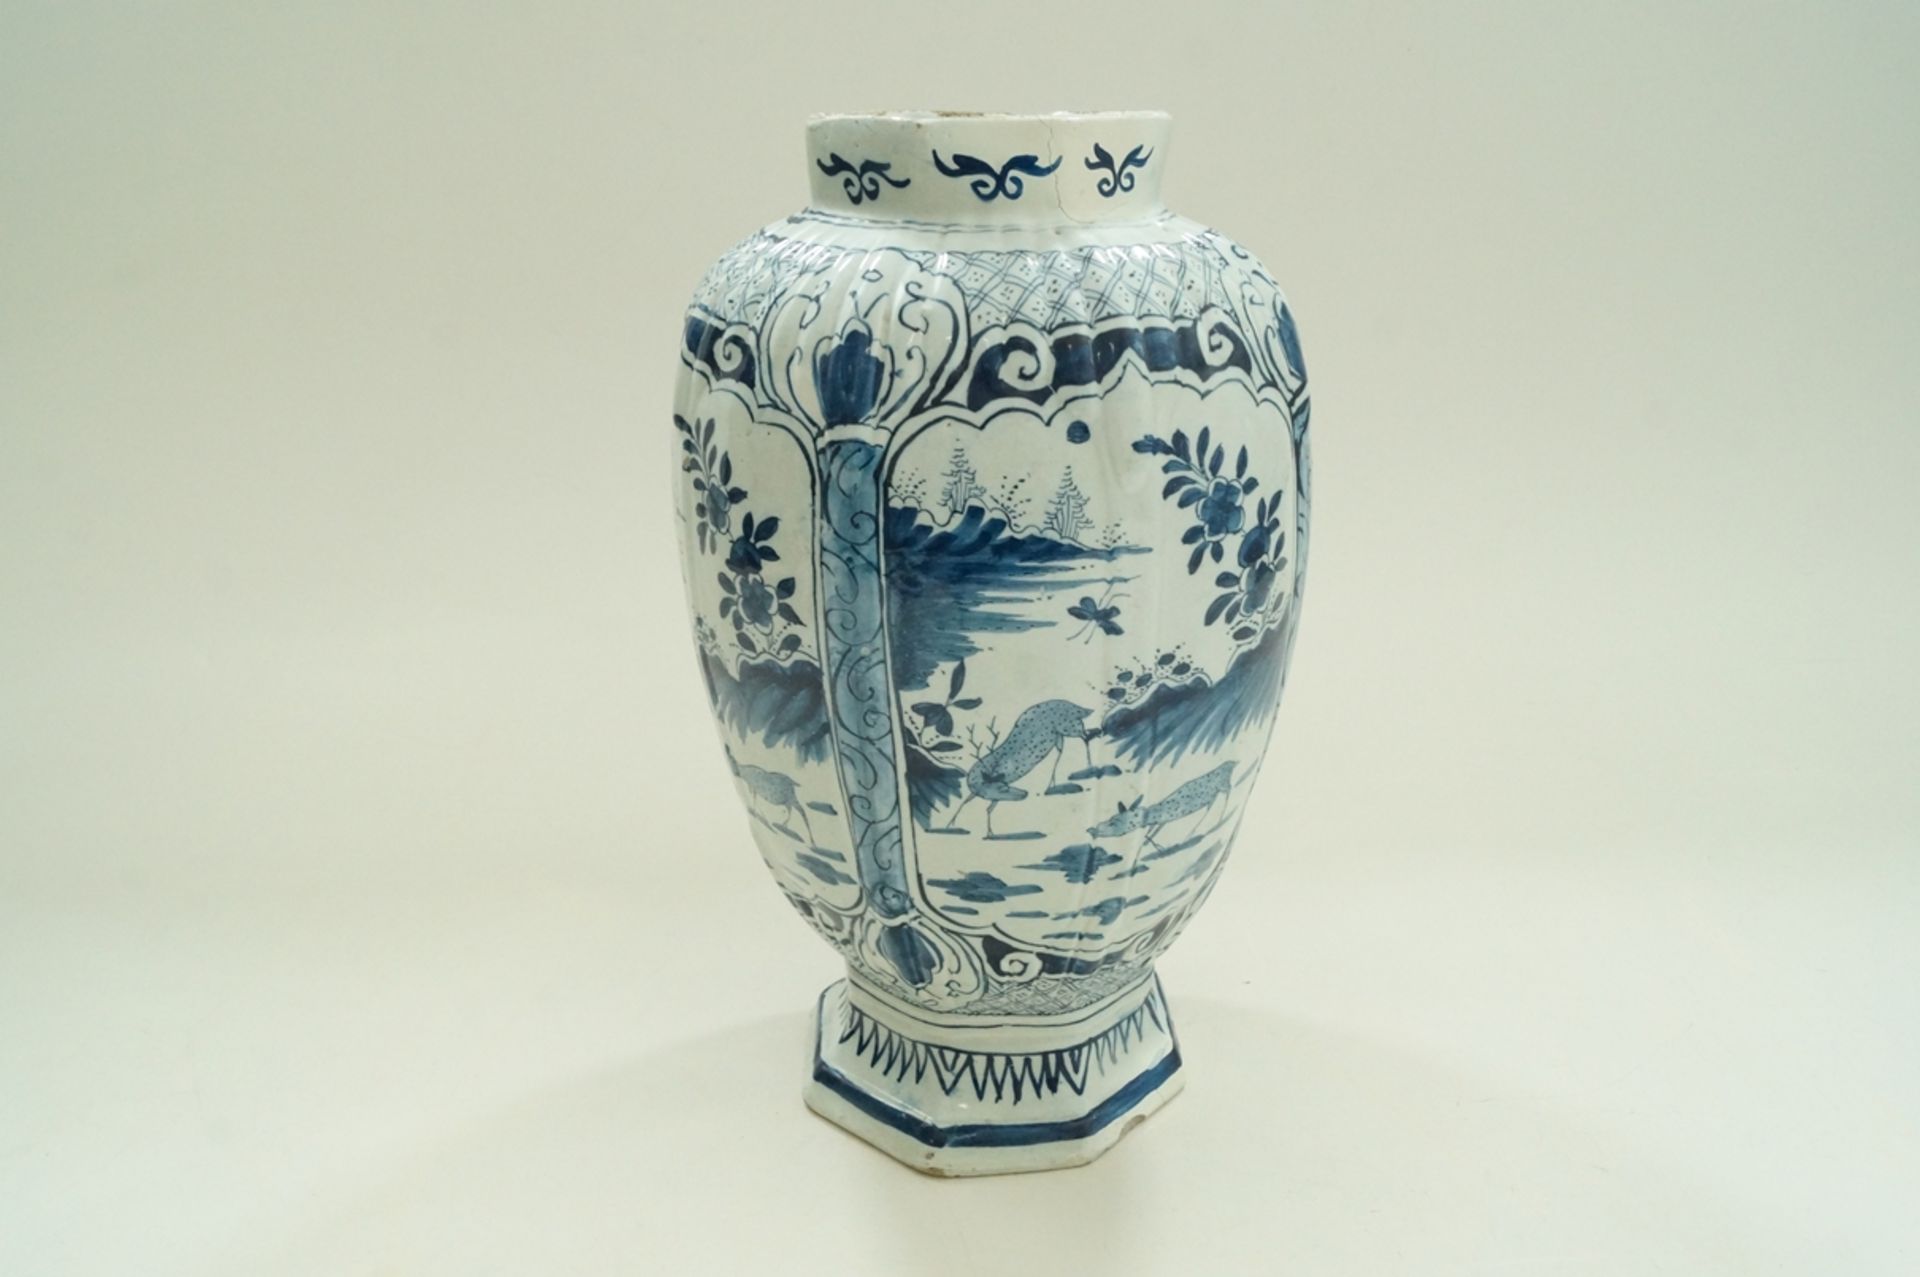 Große, niederländische Fayence-Vase, Zinnglasur, umlaufend in vier Kartuschen gleiche Rotwild-Szene